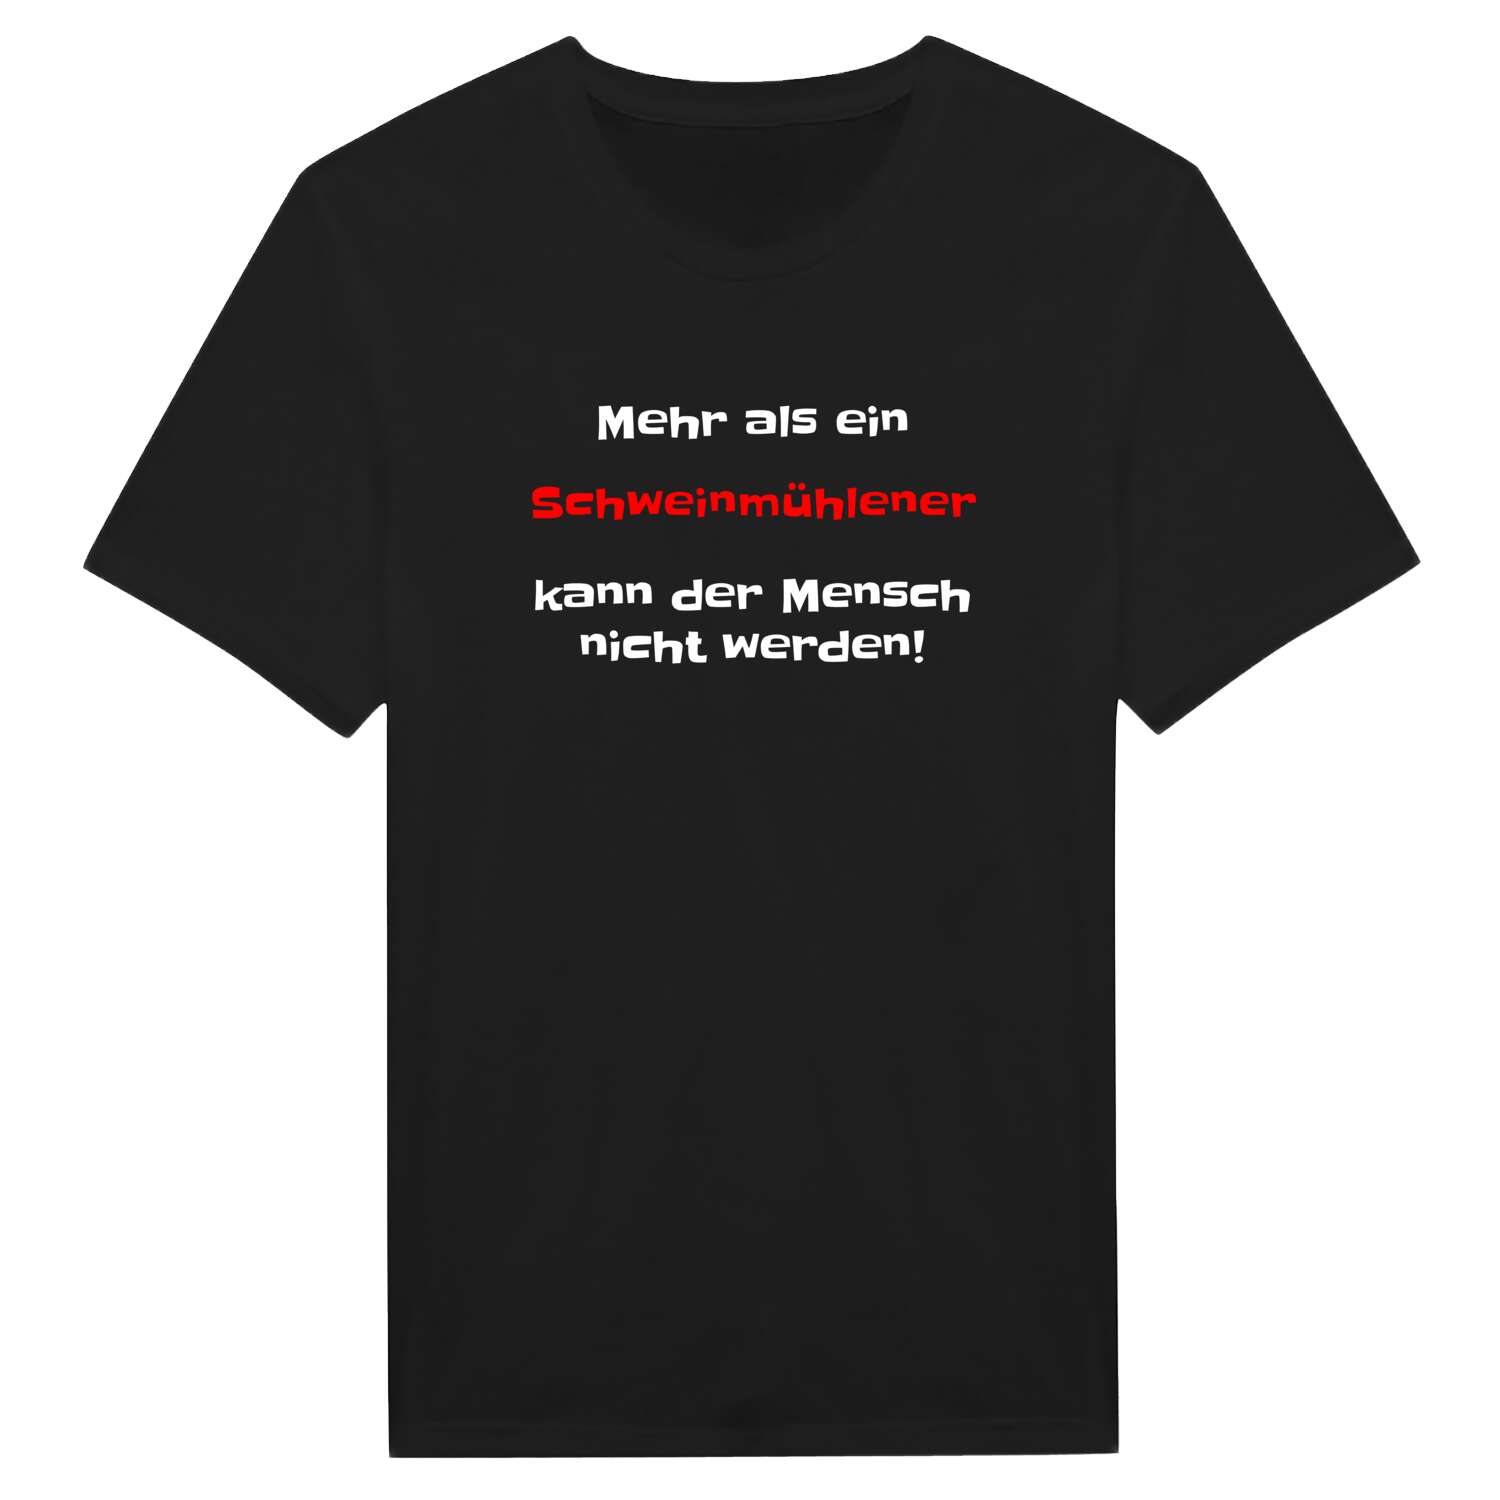 Schweinmühle T-Shirt »Mehr als ein«